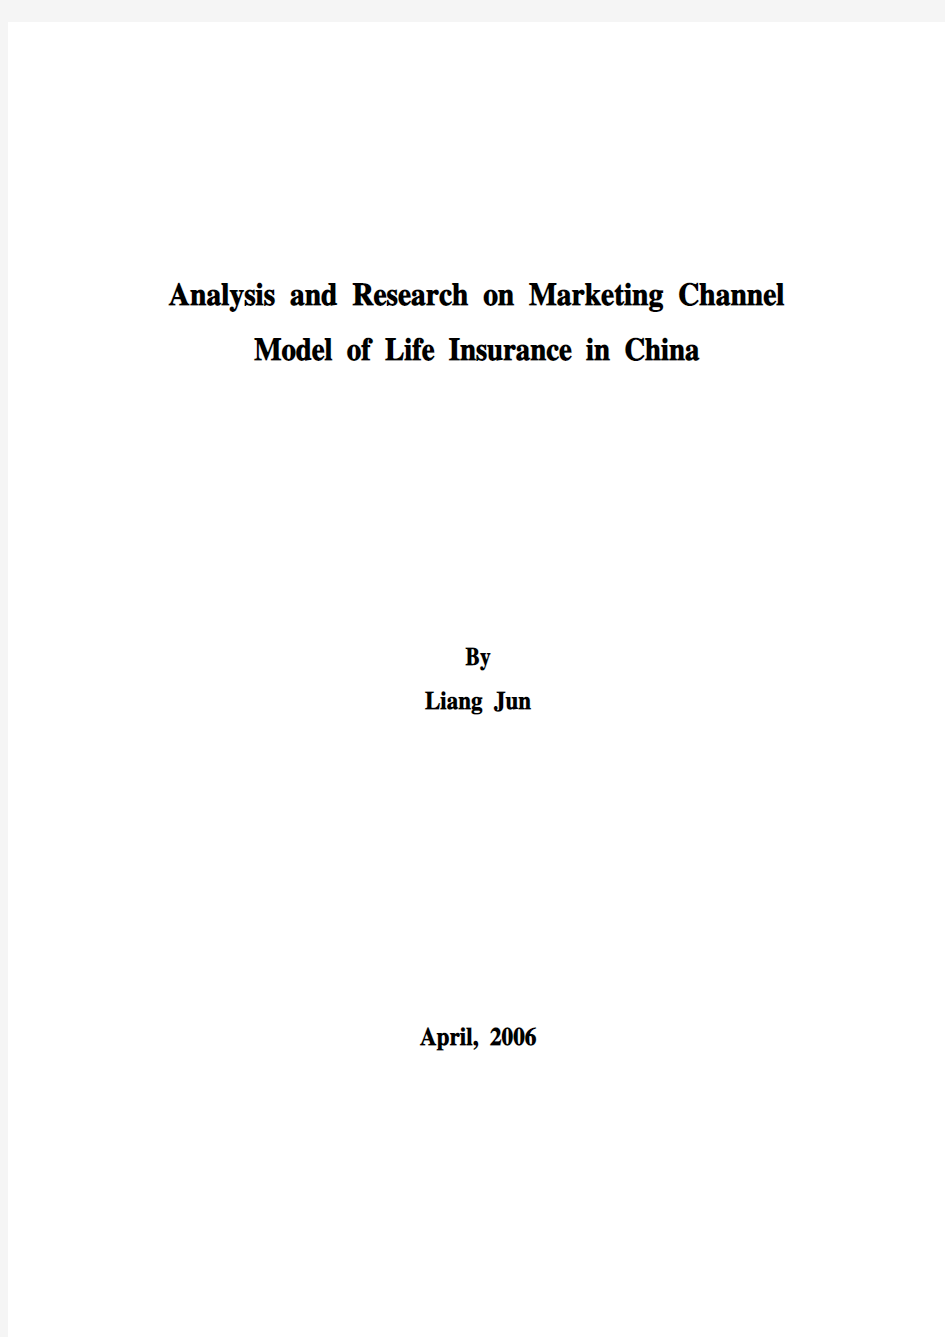 中国寿险营销模式的探讨和研究文章(修改)11